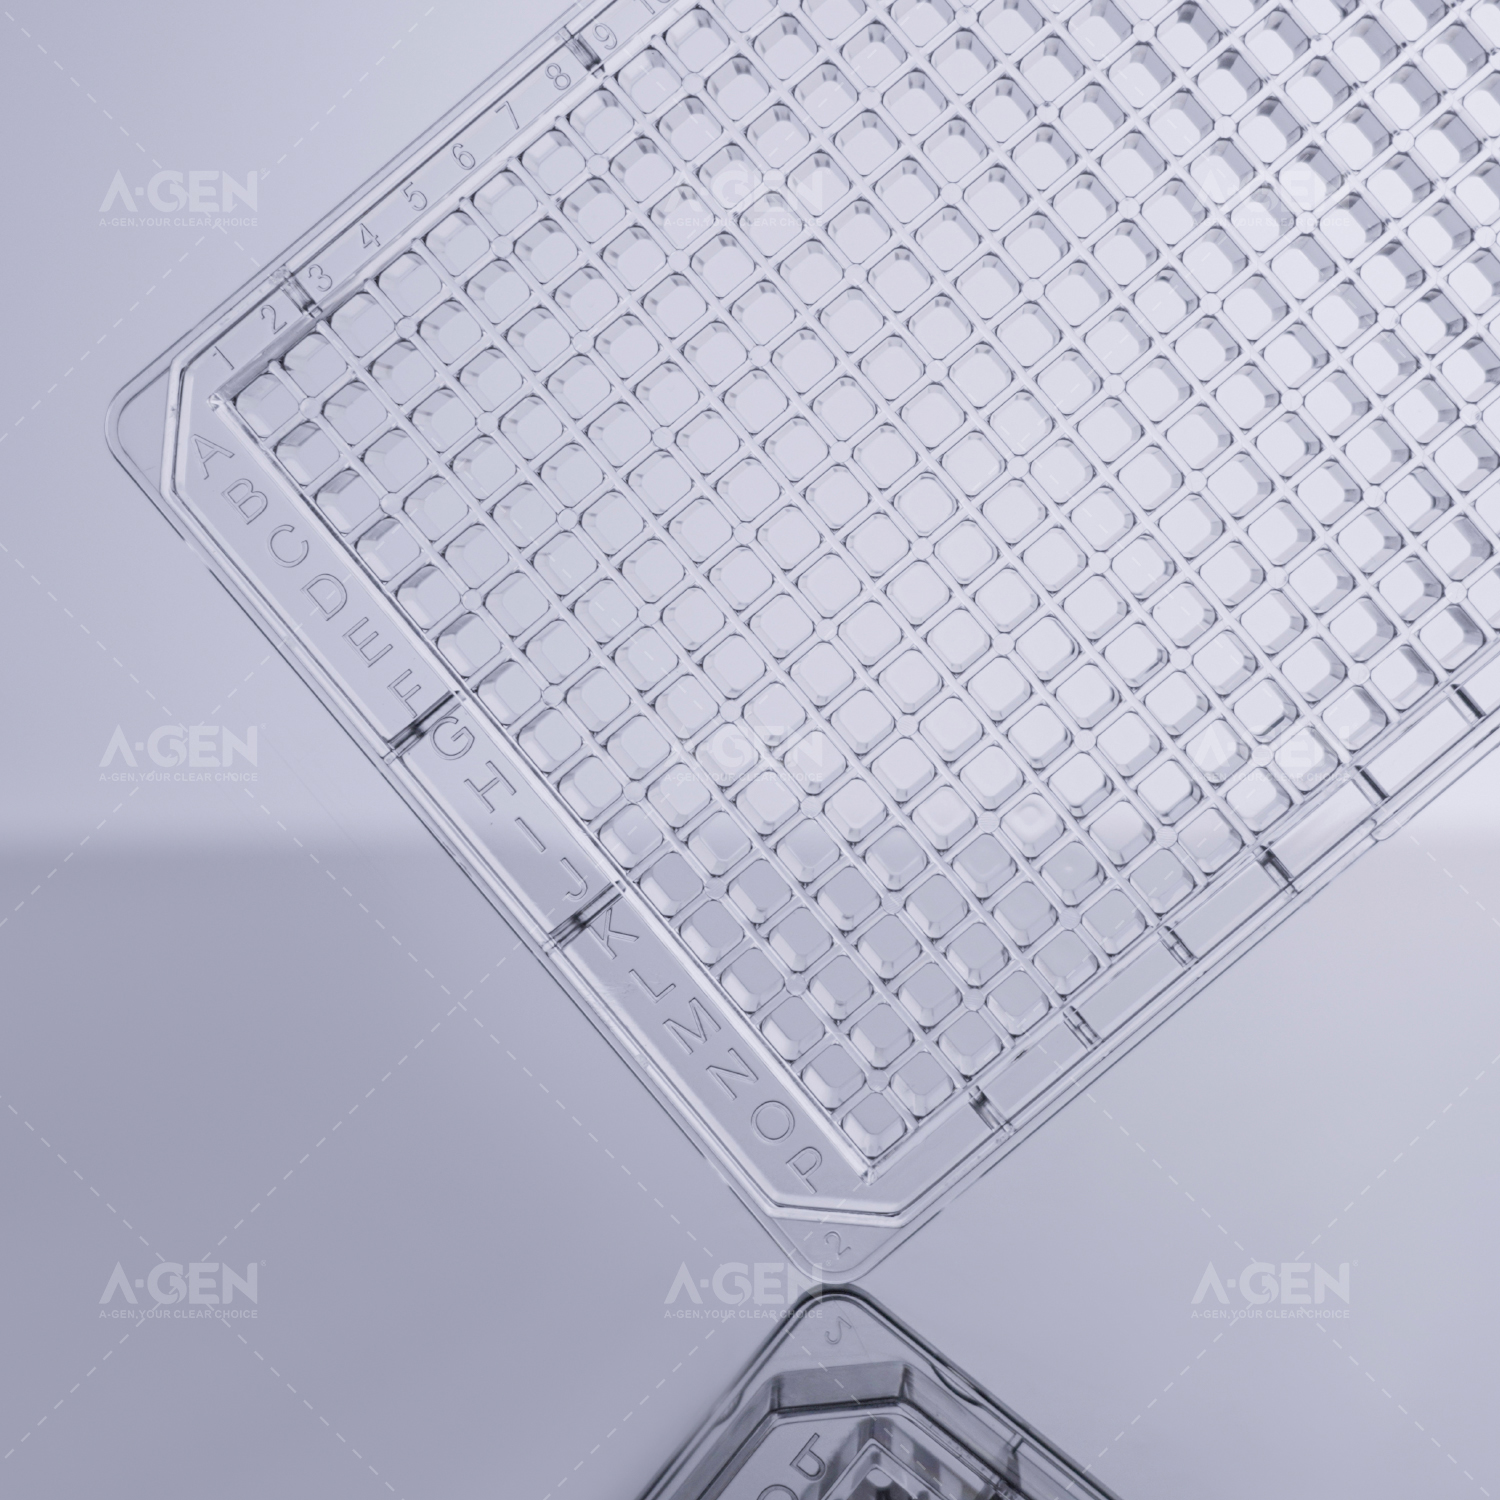 384孔透明底透明板 透明盖 TC处理 灭菌 吸塑盒装